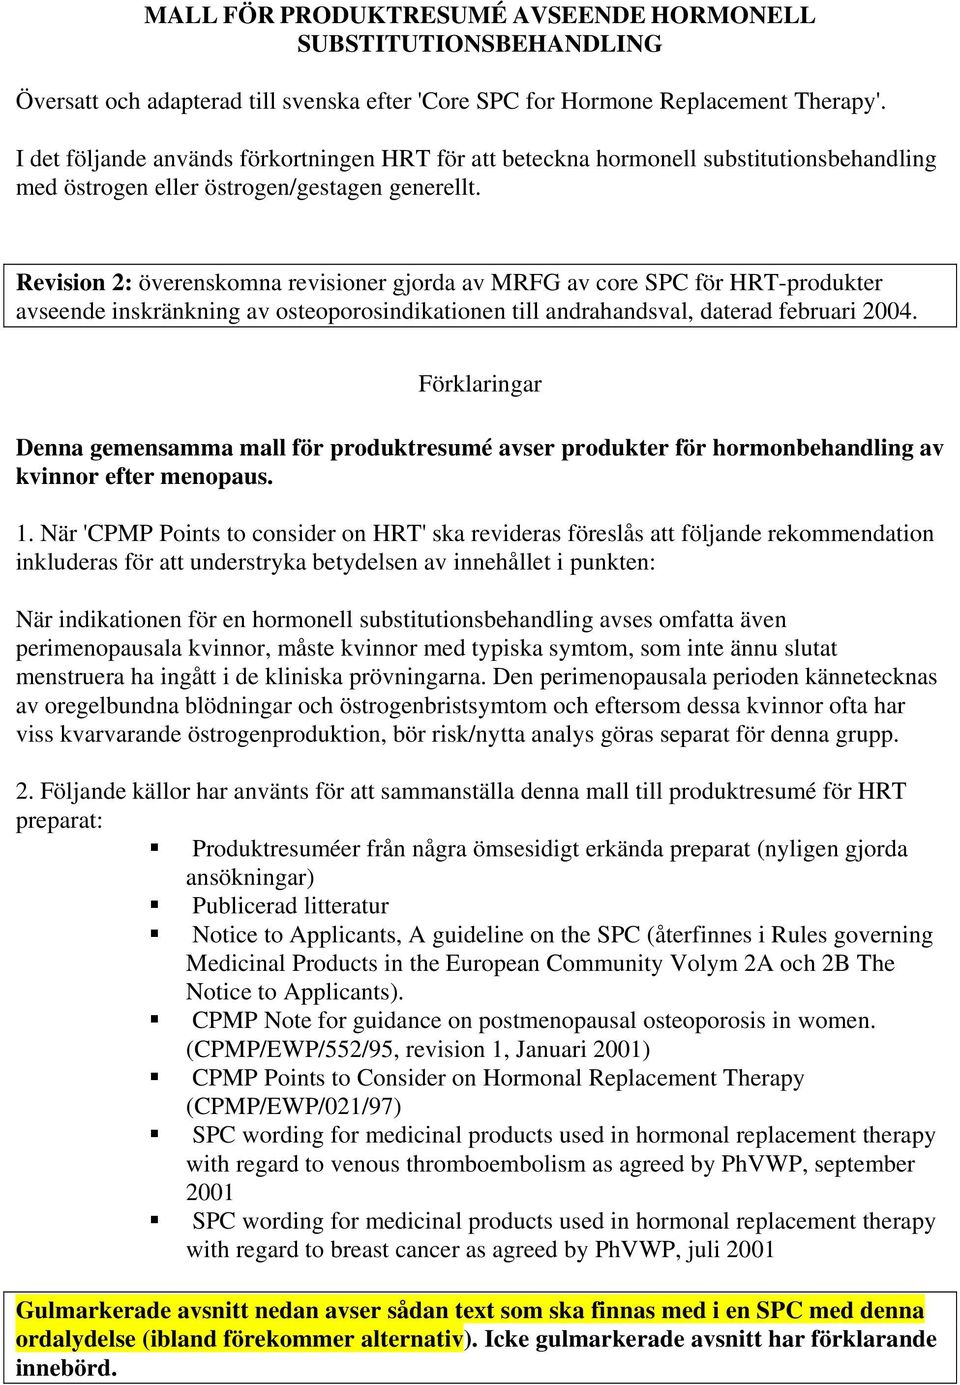 Revision 2: överenskomna revisioner gjorda av MRFG av core SPC för HRT-produkter avseende inskränkning av osteoporosindikationen till andrahandsval, daterad februari 2004.